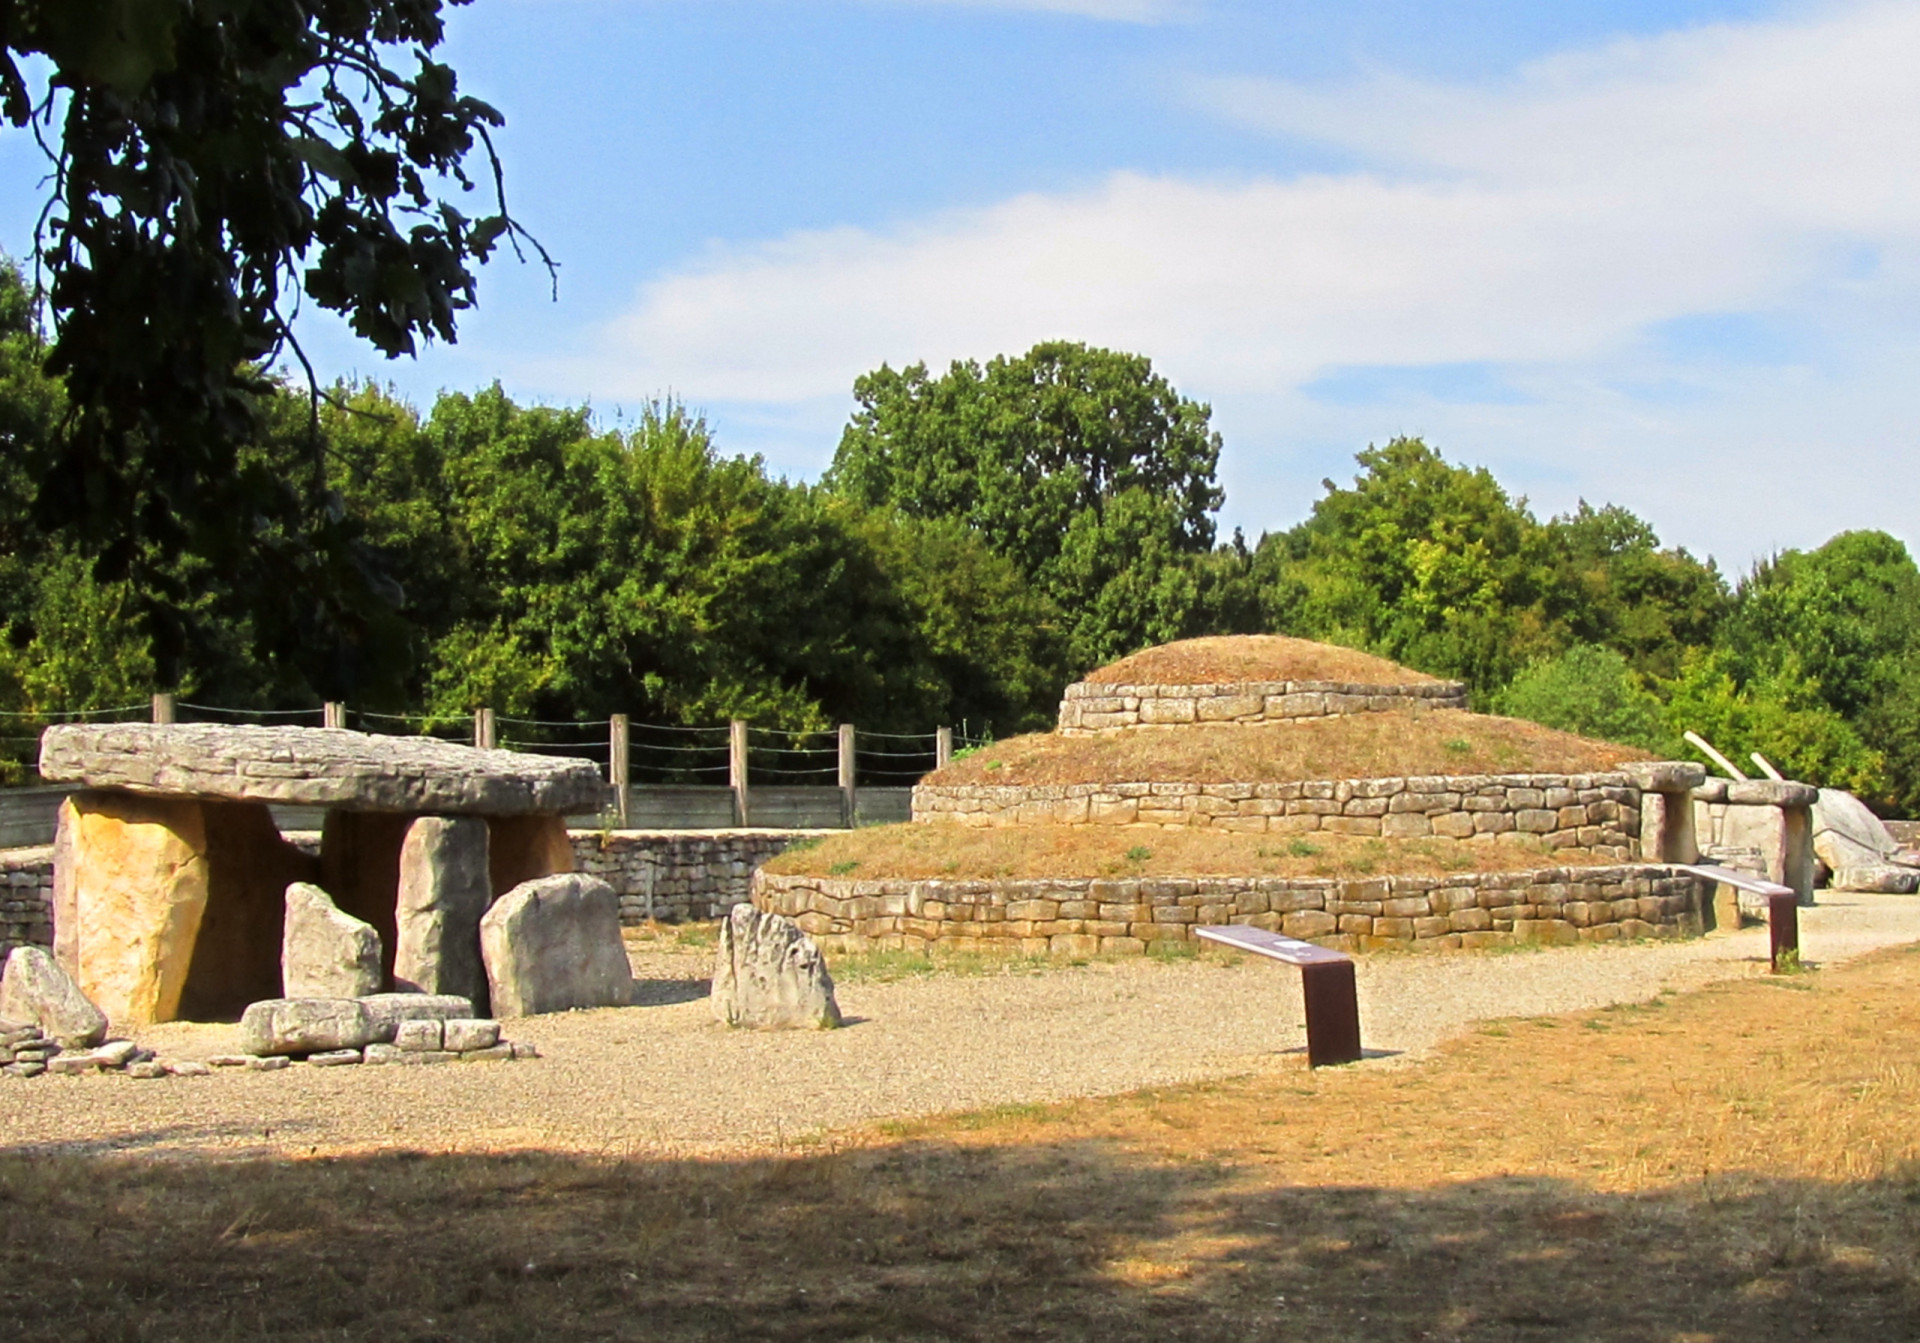 <p>Le Tumulus de Bougon, un groupe de cinq tumulus néolithiques situés en Nouvelle-Aquitaine, en France, est le plus ancien complexe funéraire connu au monde. Les archéologues ont daté le site d'environ 4800 avant notre ère.</p><p><a href="https://www.msn.com/fr-fr/community/channel/vid-7xx8mnucu55yw63we9va2gwr7uihbxwc68fxqp25x6tg4ftibpra?cvid=94631541bc0f4f89bfd59158d696ad7e">Suivez-nous et accédez tous les jours à du contenu exclusif</a></p>